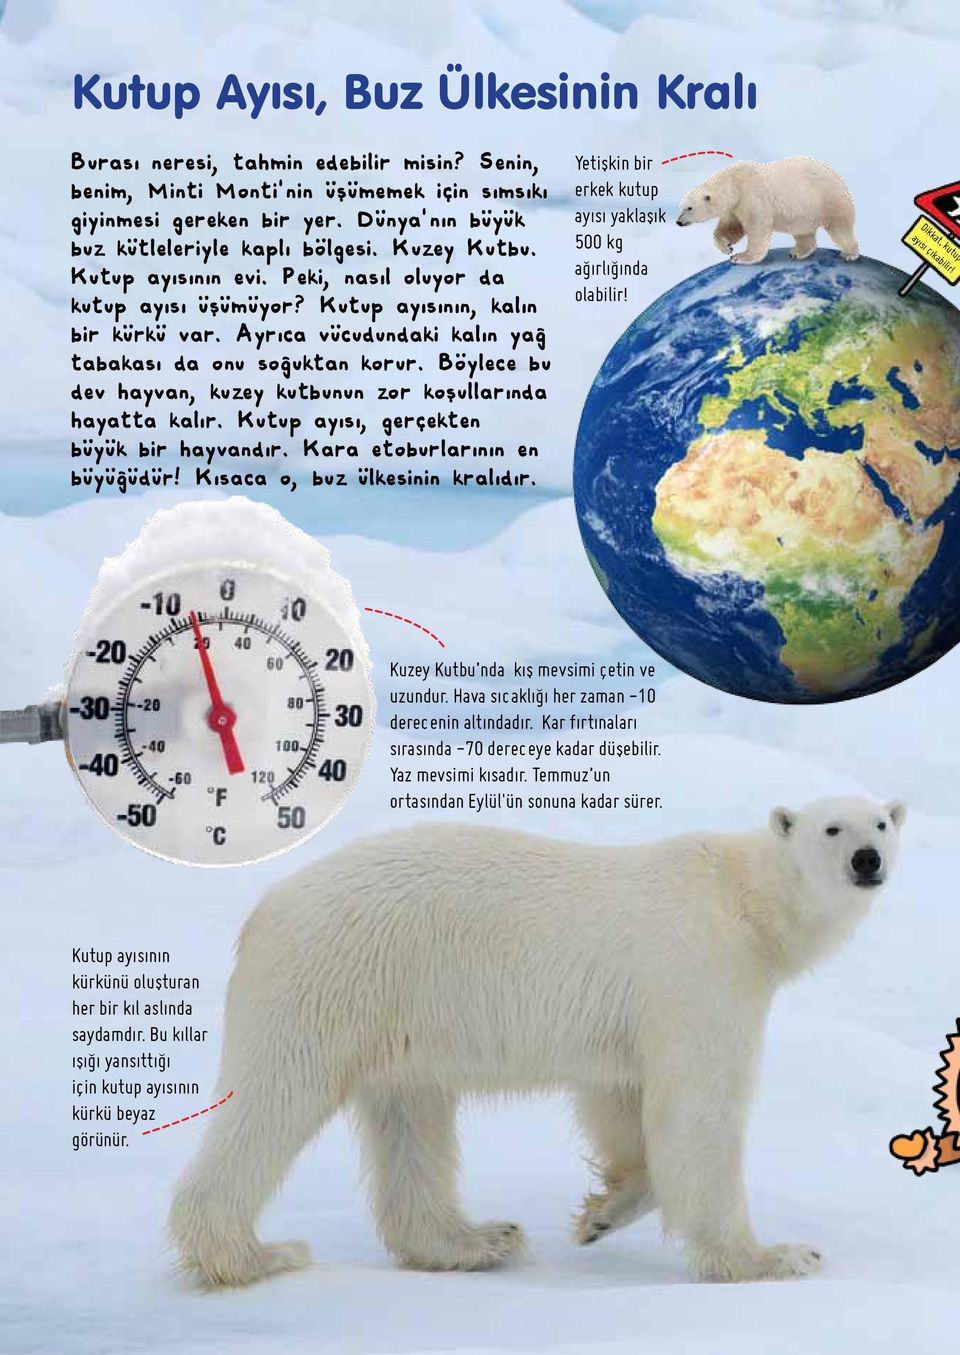 Böylece bu dev hayvan, kuzey kutbunun zor koşullarında hayatta kalır. Kutup ayısı, gerçekten büyük bir hayvandır. Kara etoburlarının en büyüğüdür! Kısaca o, buz ülkesinin kralıdır.